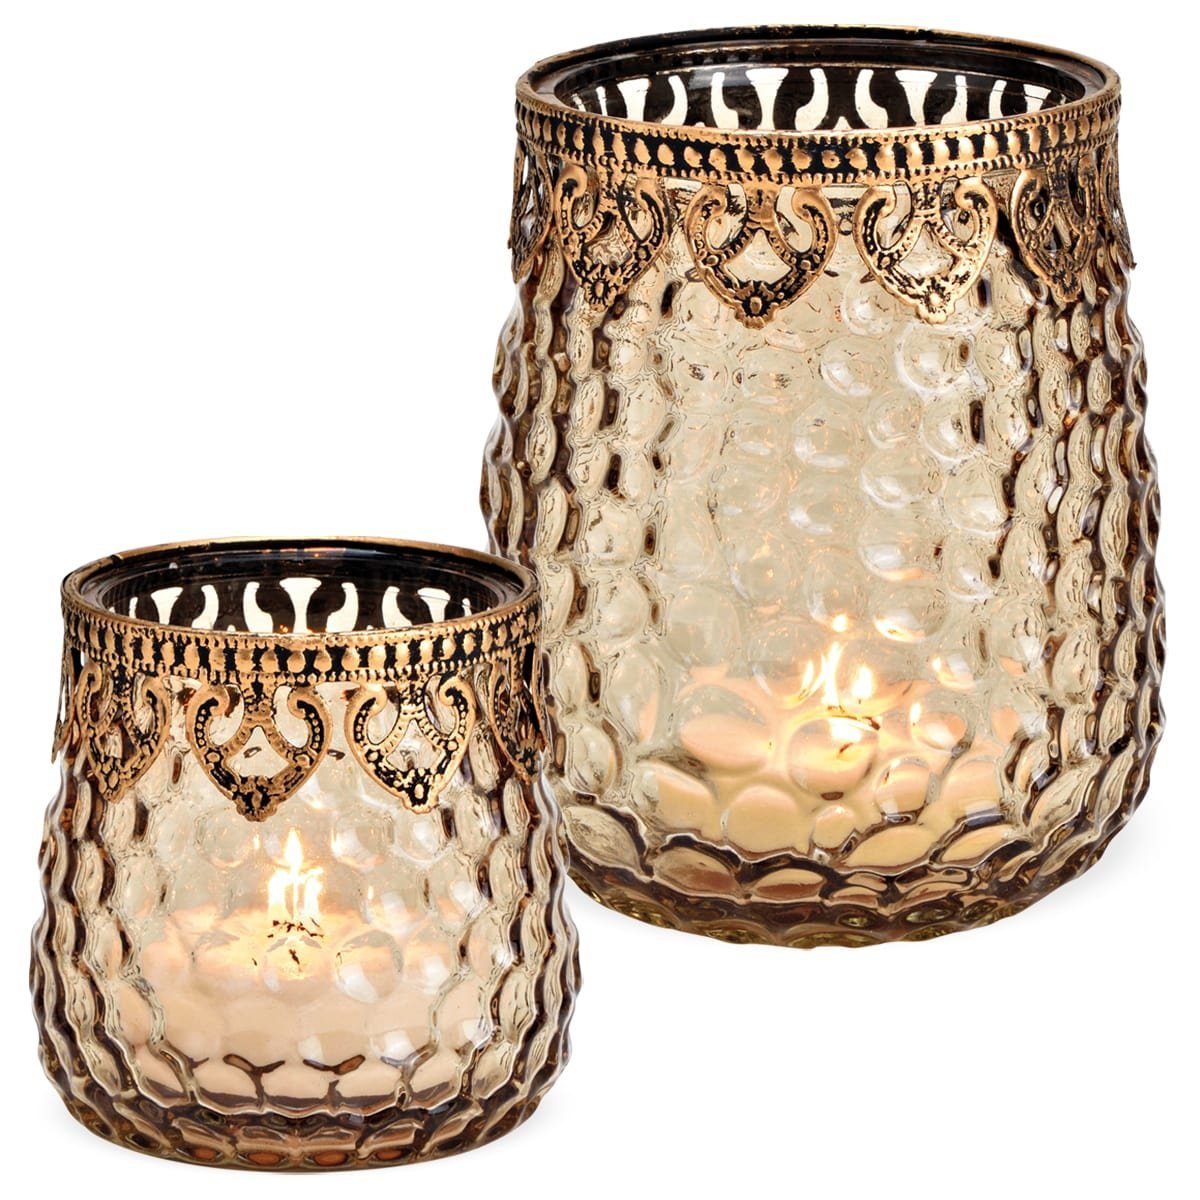 ø & Dekor Glas Windlicht aus in matches21 HOBBY mit Kerzenständer in Metall HOME braun 9x9 cm